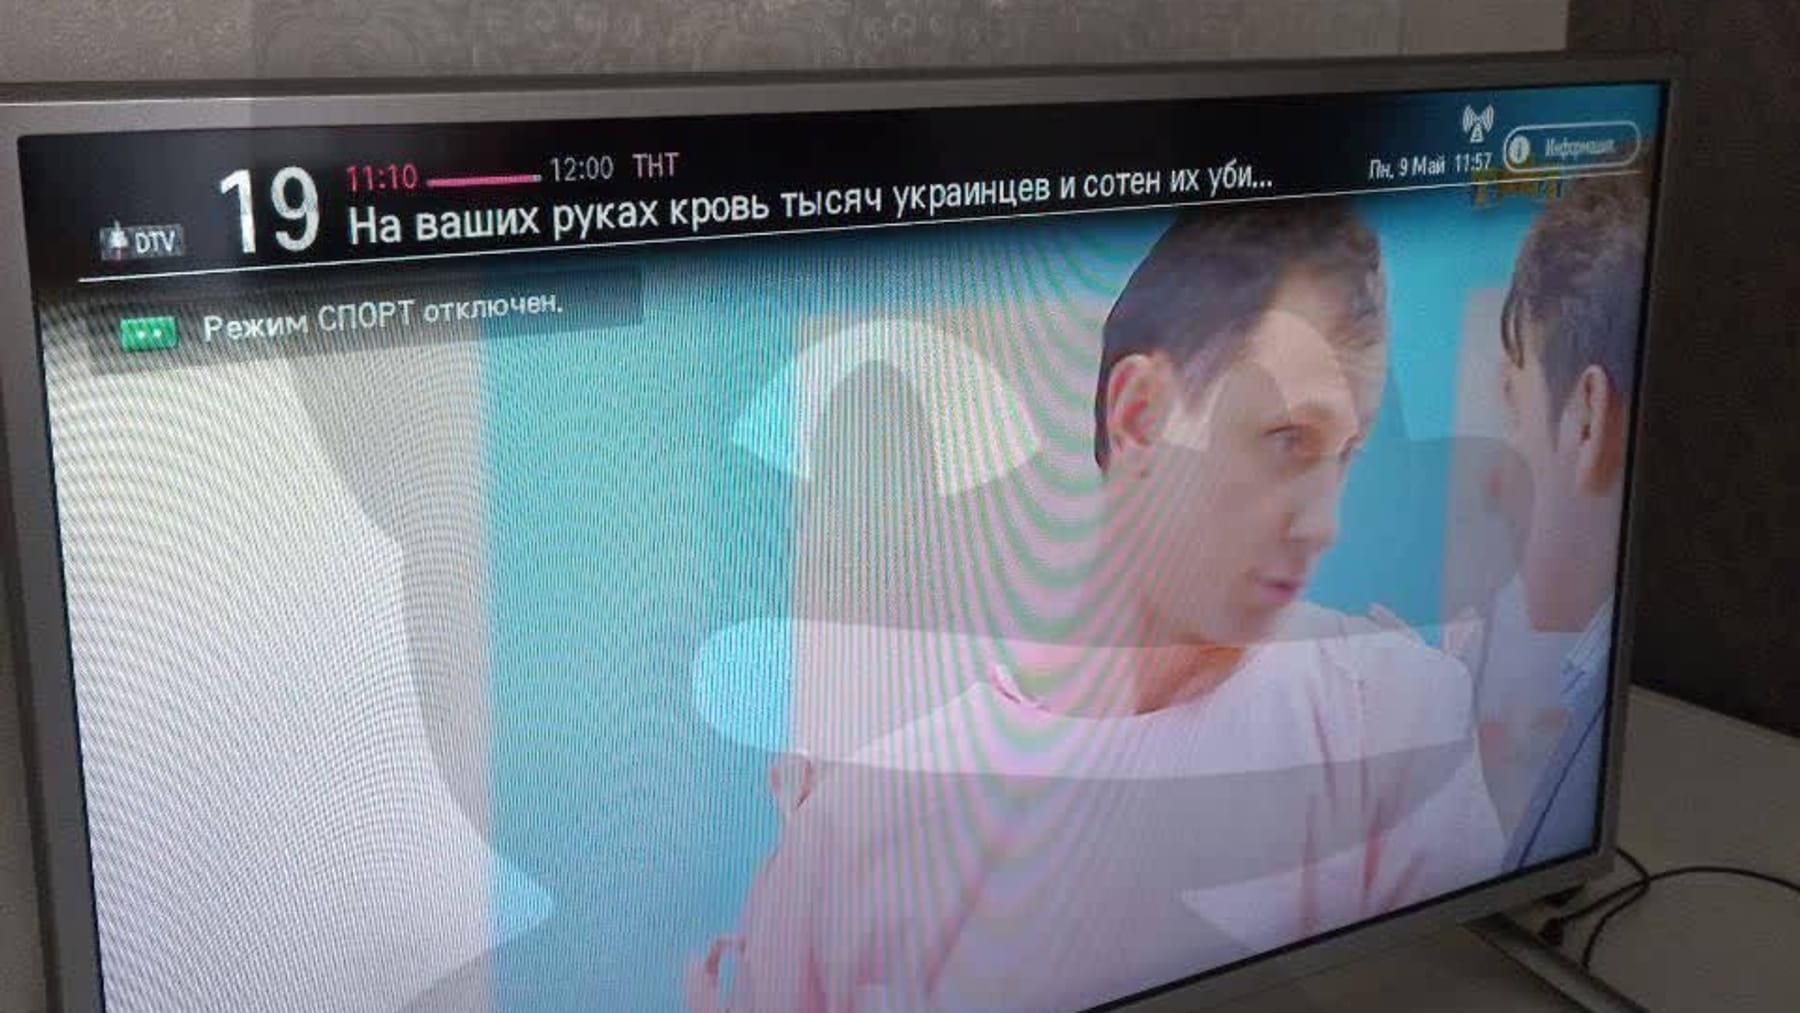 Se dice que los piratas informáticos están transmitiendo mensajes contra la guerra en la televisión rusa.